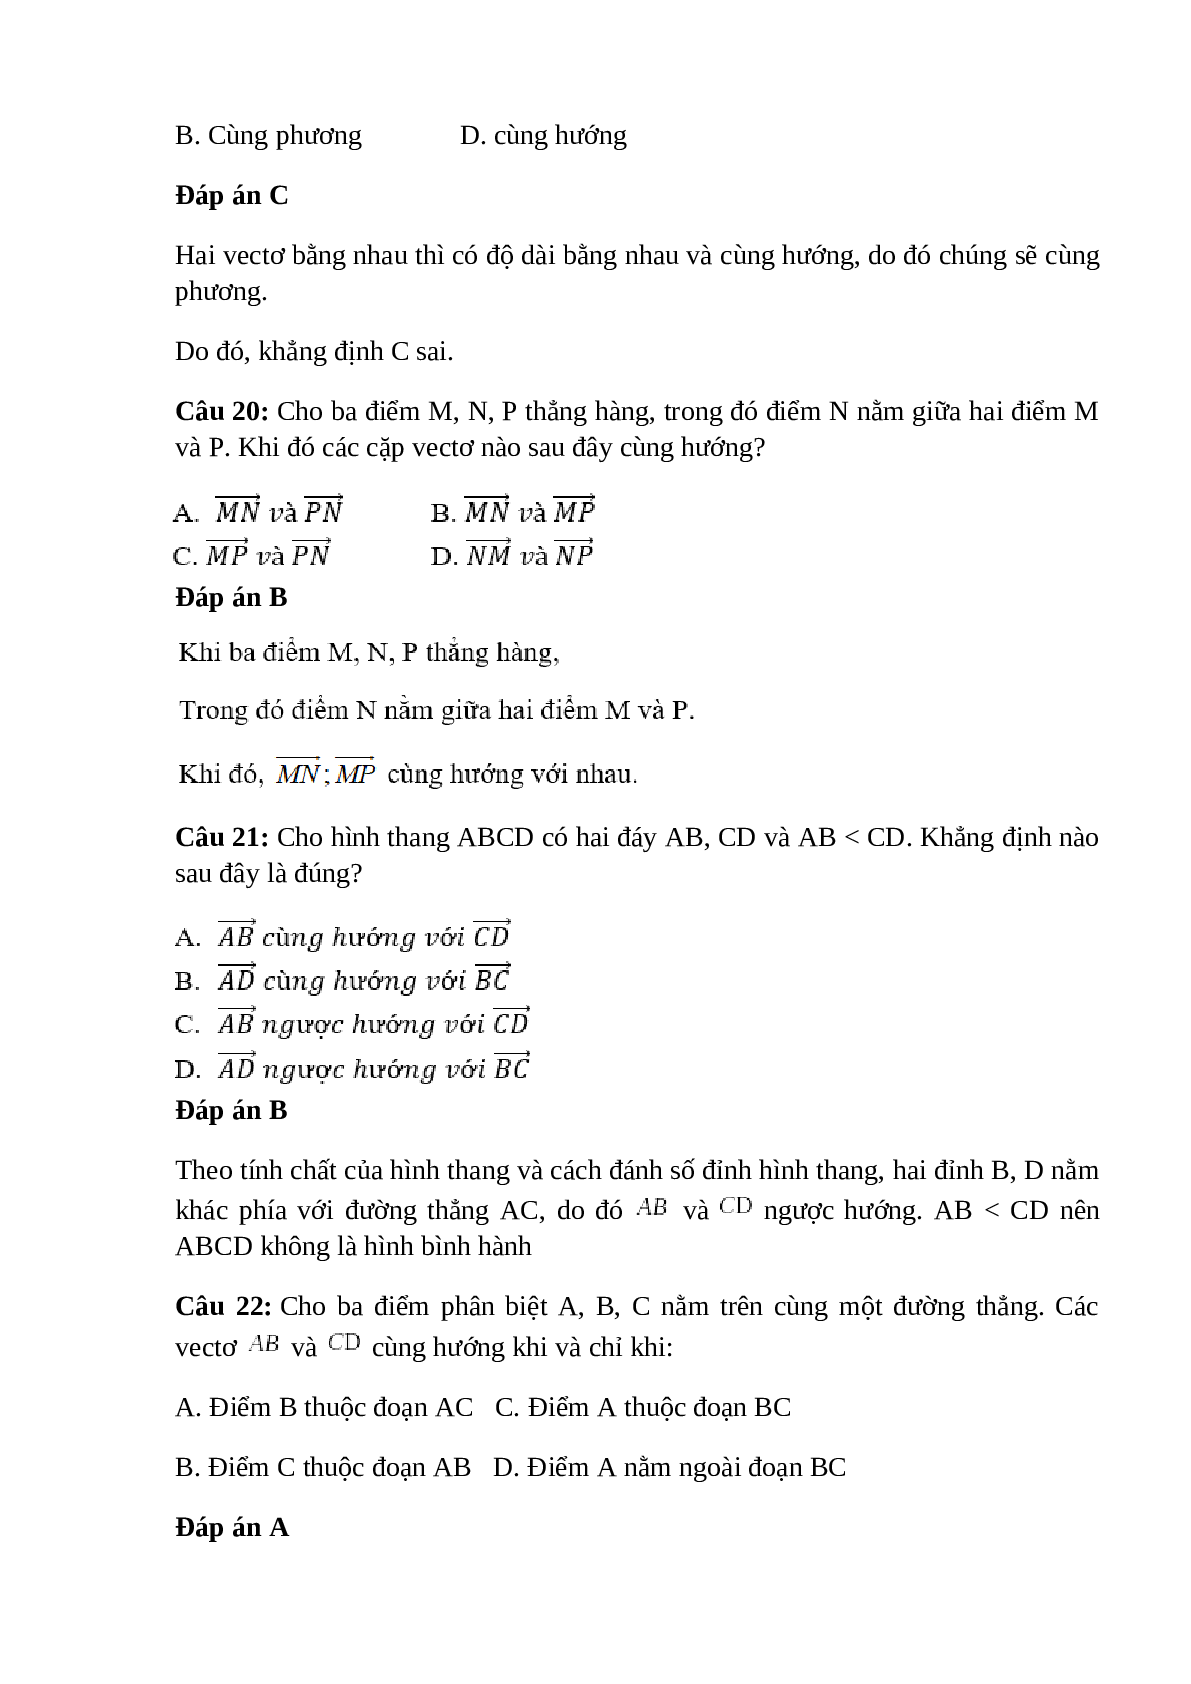 Trắc nghiệm Các định nghĩa (phần 2) có đáp án – Toán lớp 10 (trang 3)